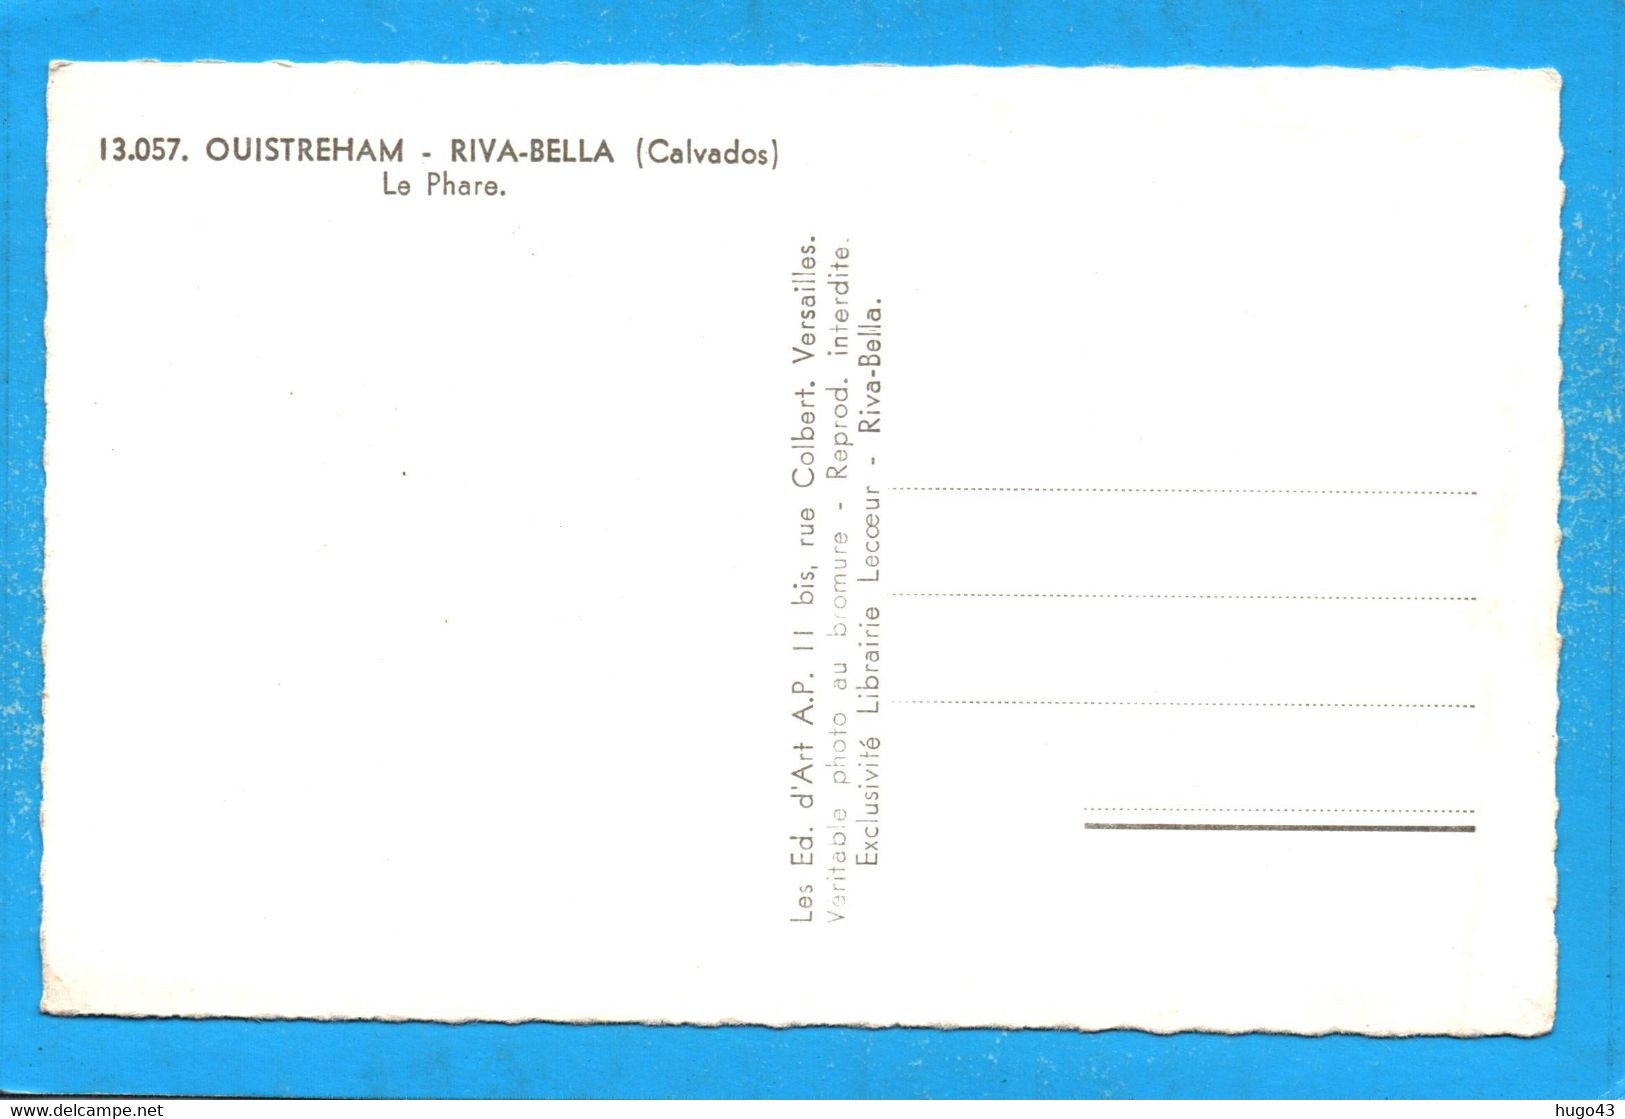 (RECTO / VERSO) OUISTREHAM - RIVA BELLA - N° 13.057 - LE PHARE AVEC BATEAUX DE PECHE - FORMAT CPA COULEUR - Ouistreham